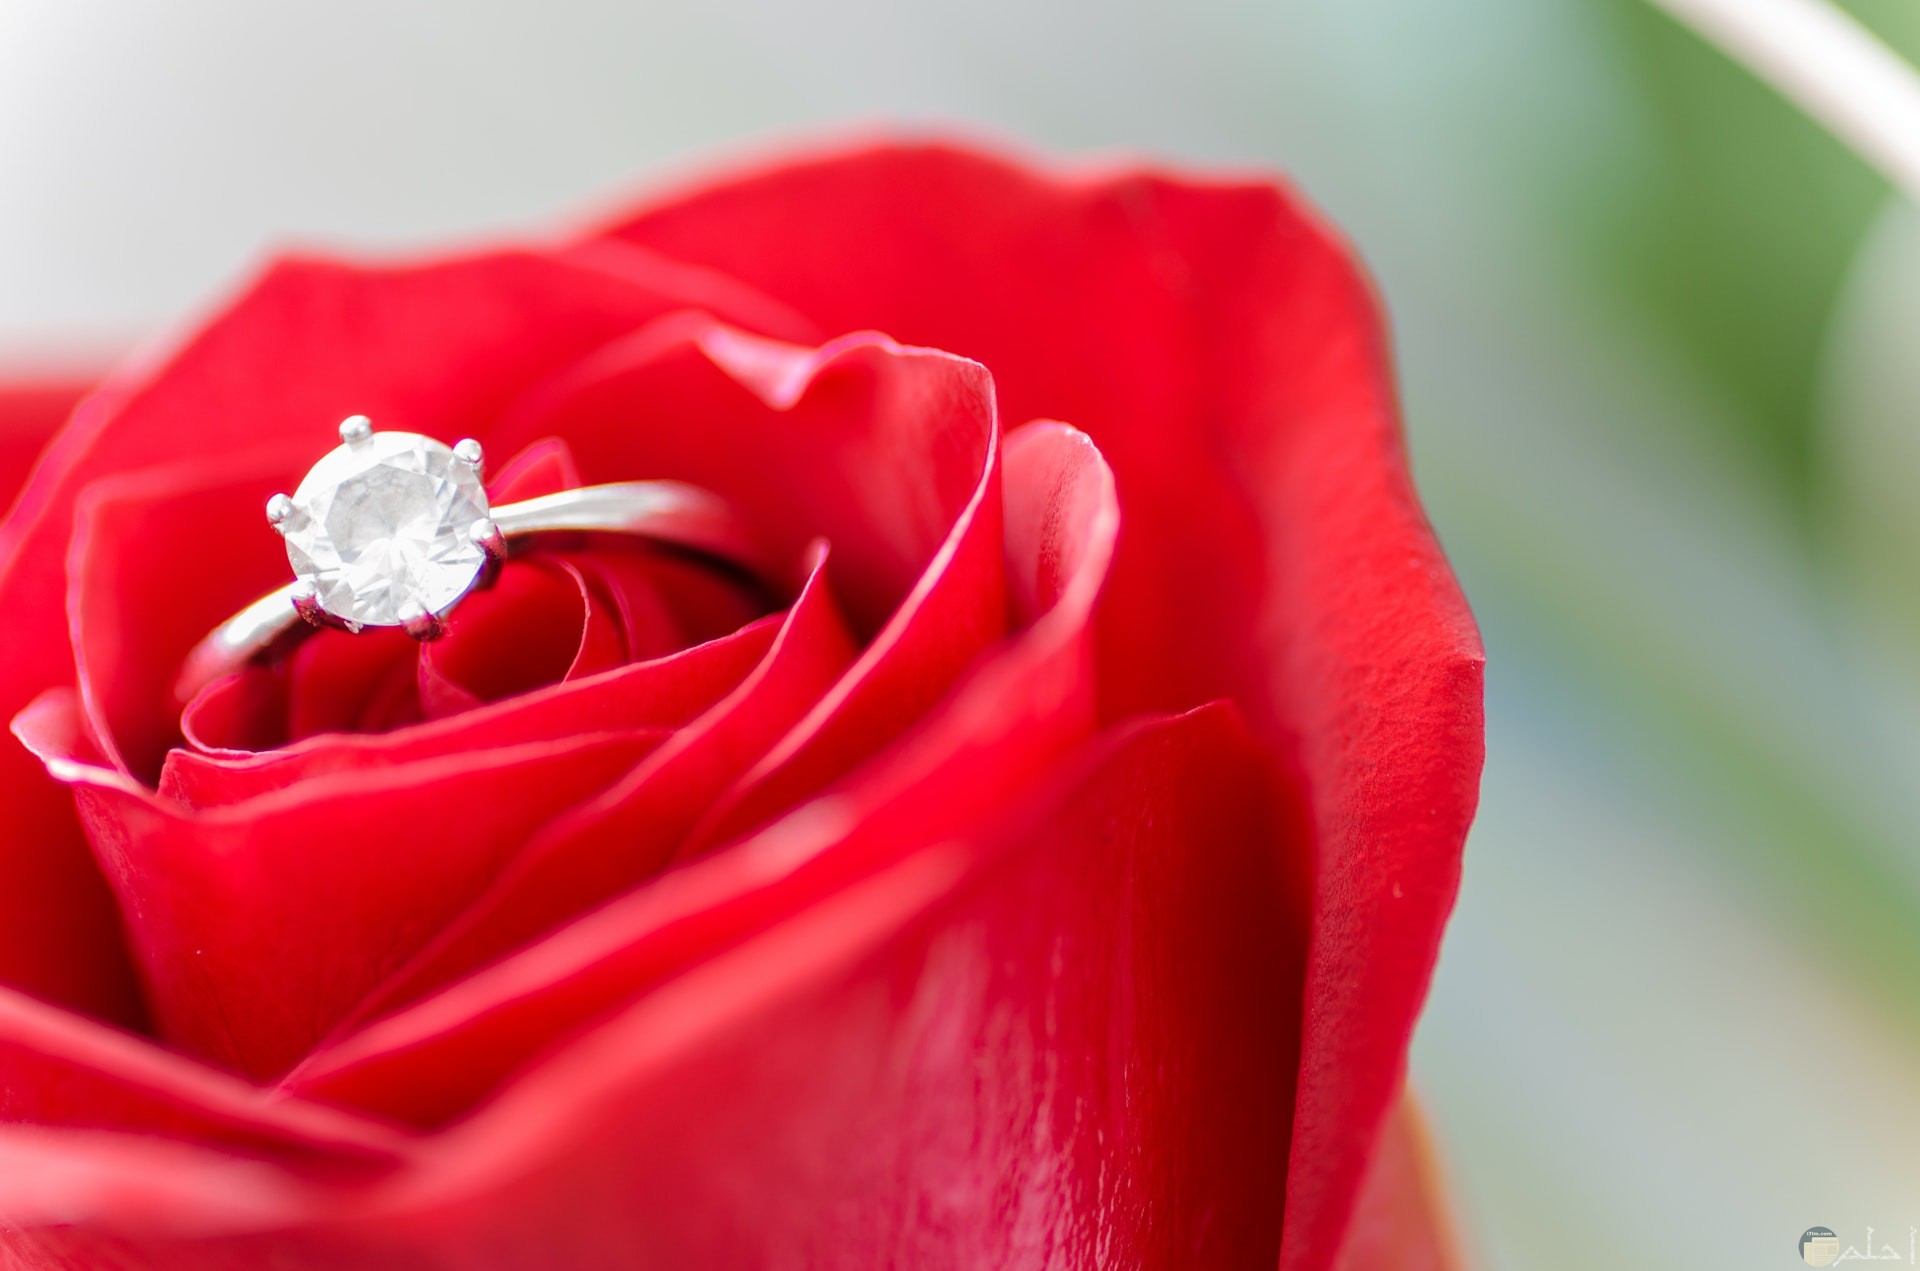 صورة رومانسية جميلة لوردة حمراء حلوة بها خاتم روعة